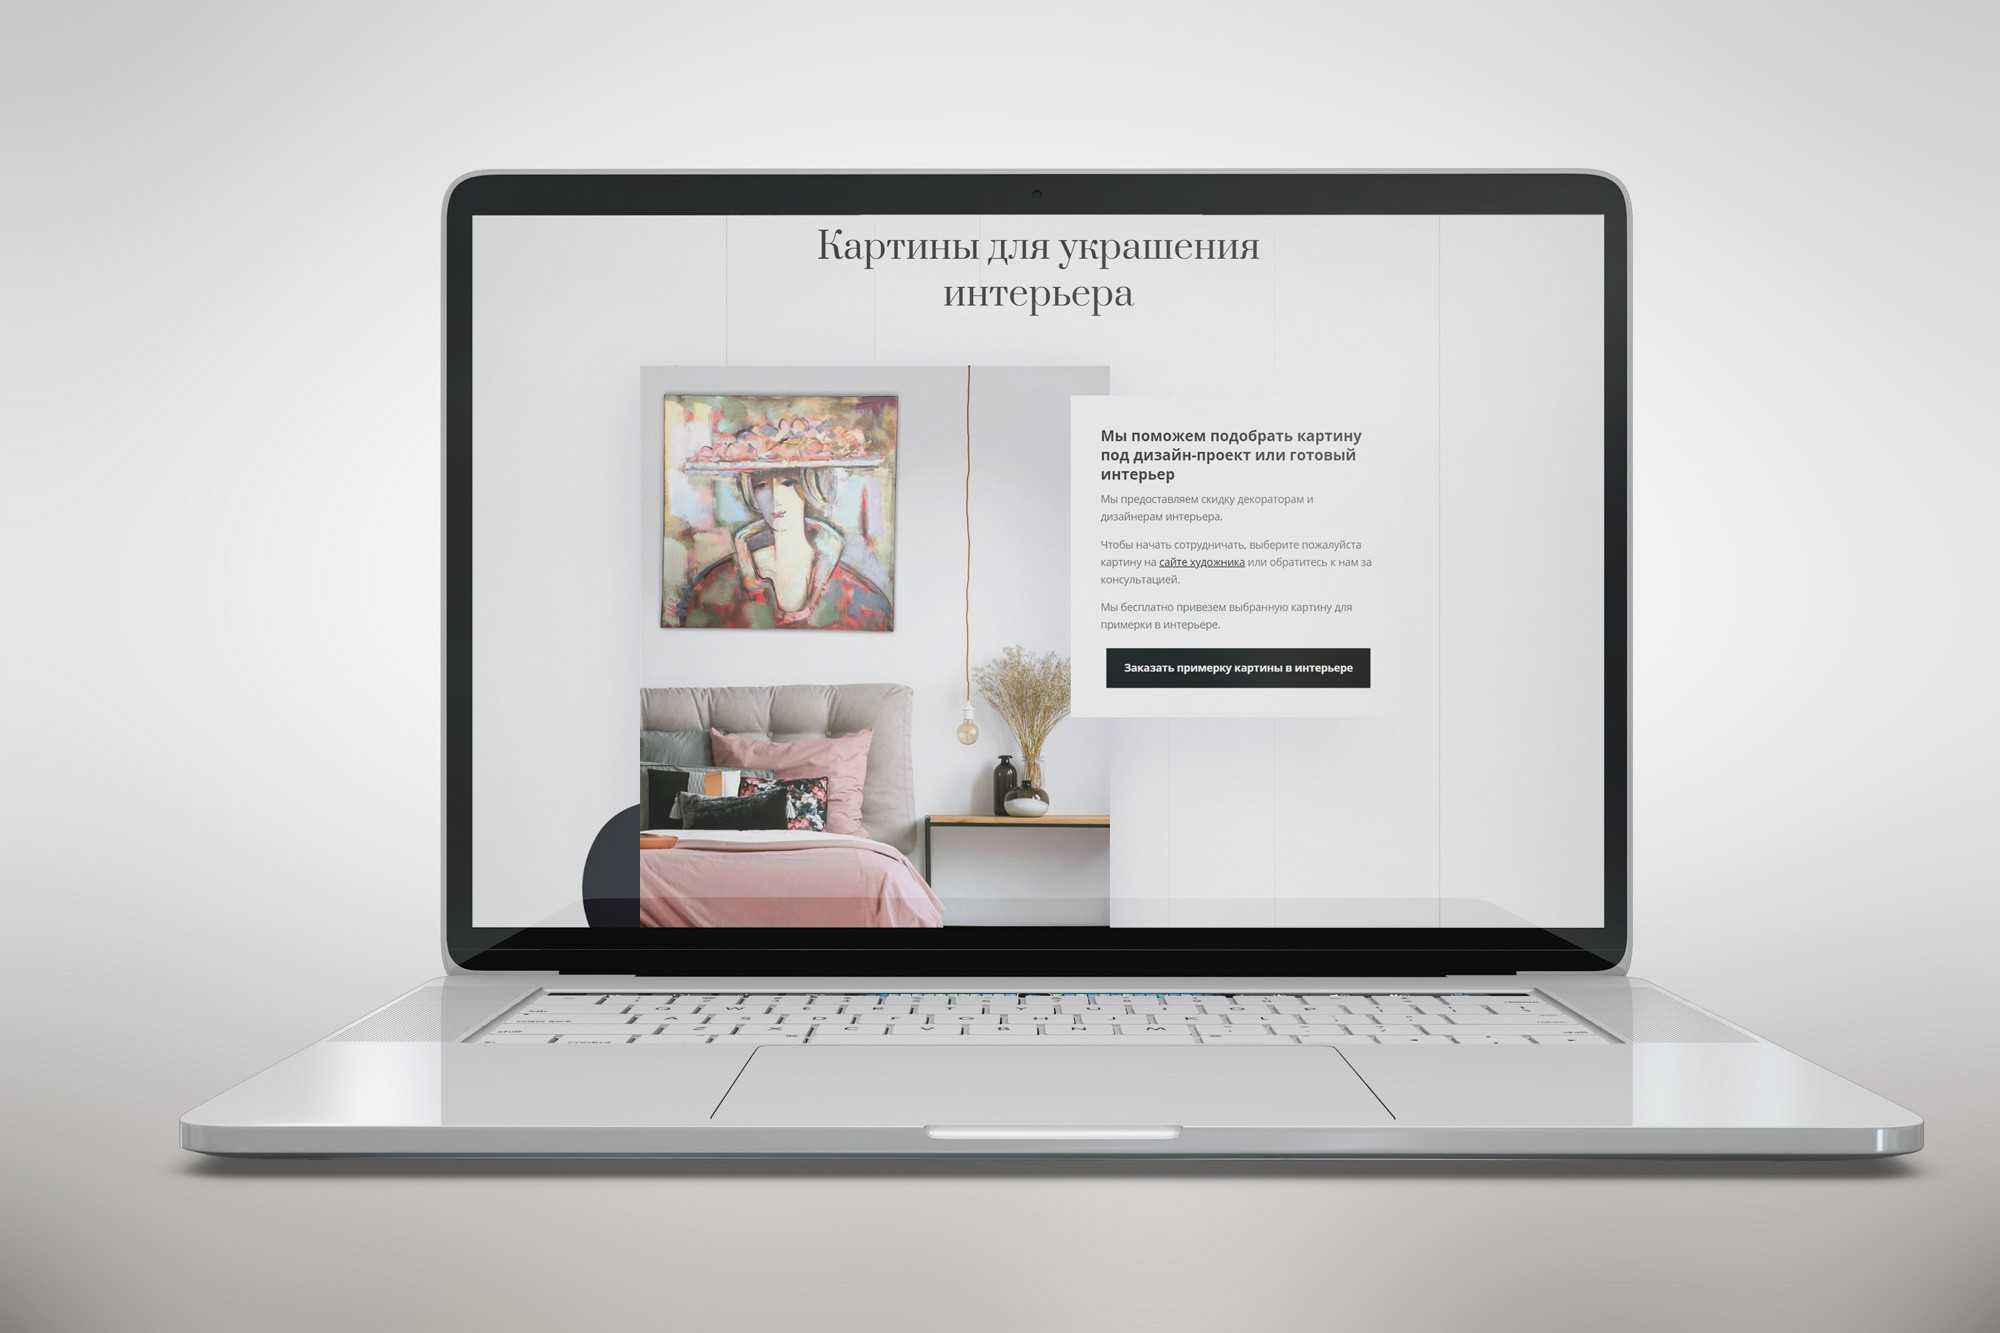 Отзывчивый веб-дизайн | webreference